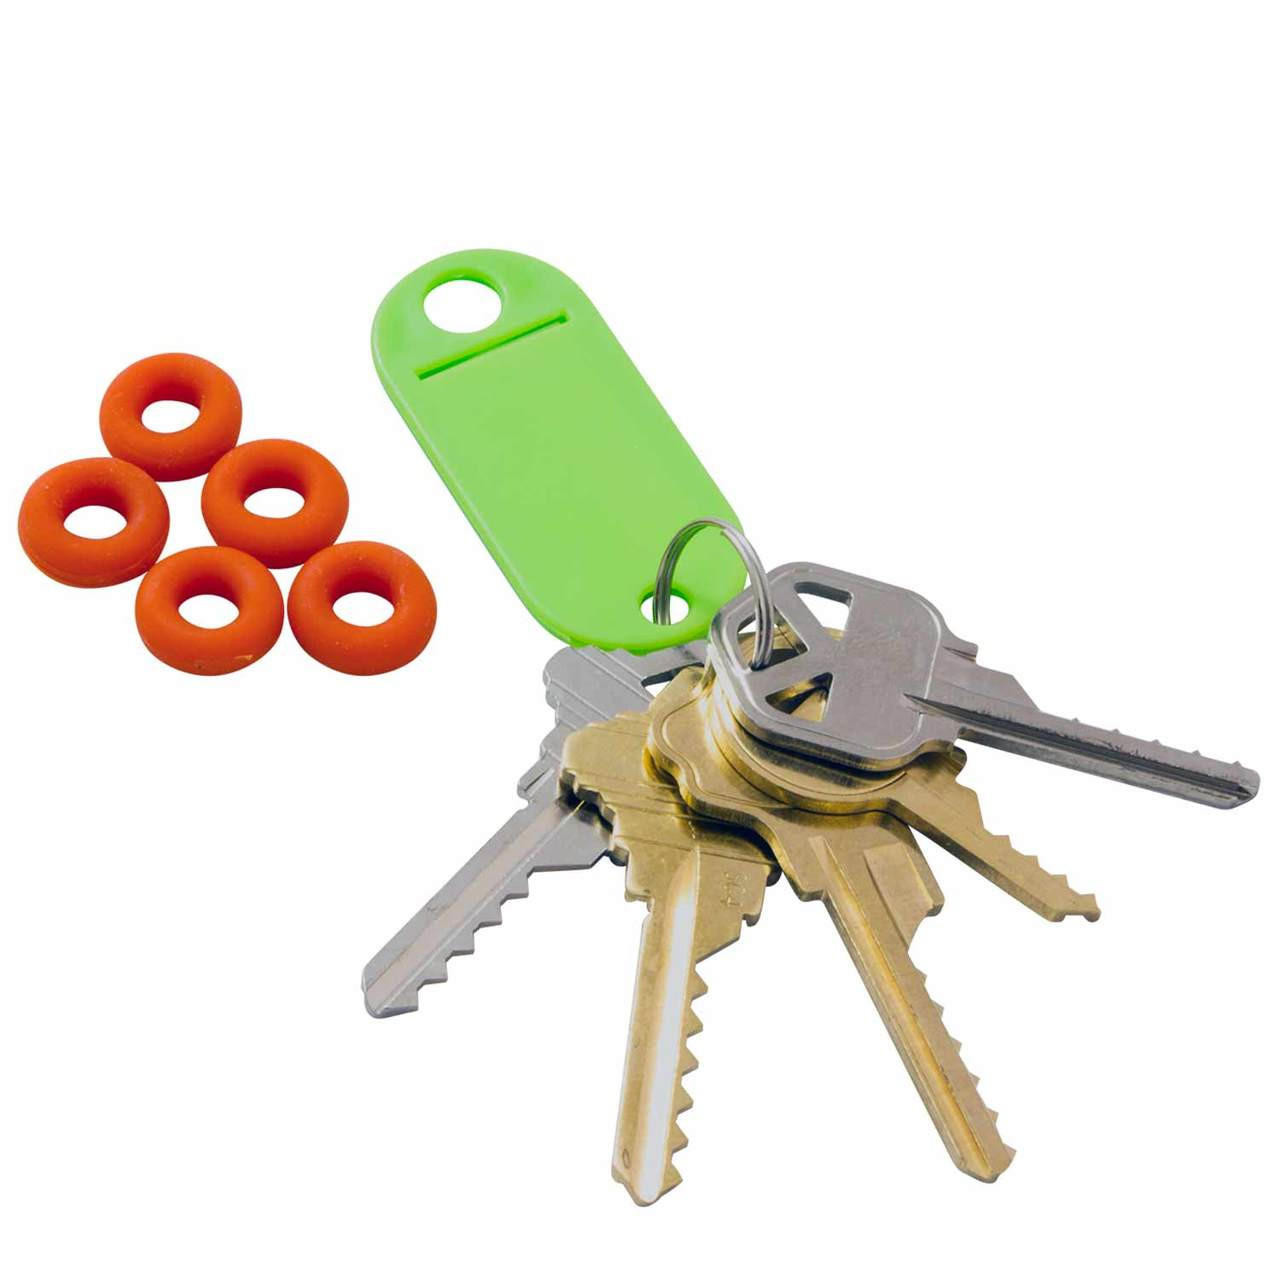 Bump Keys Products - KSEC Solutions